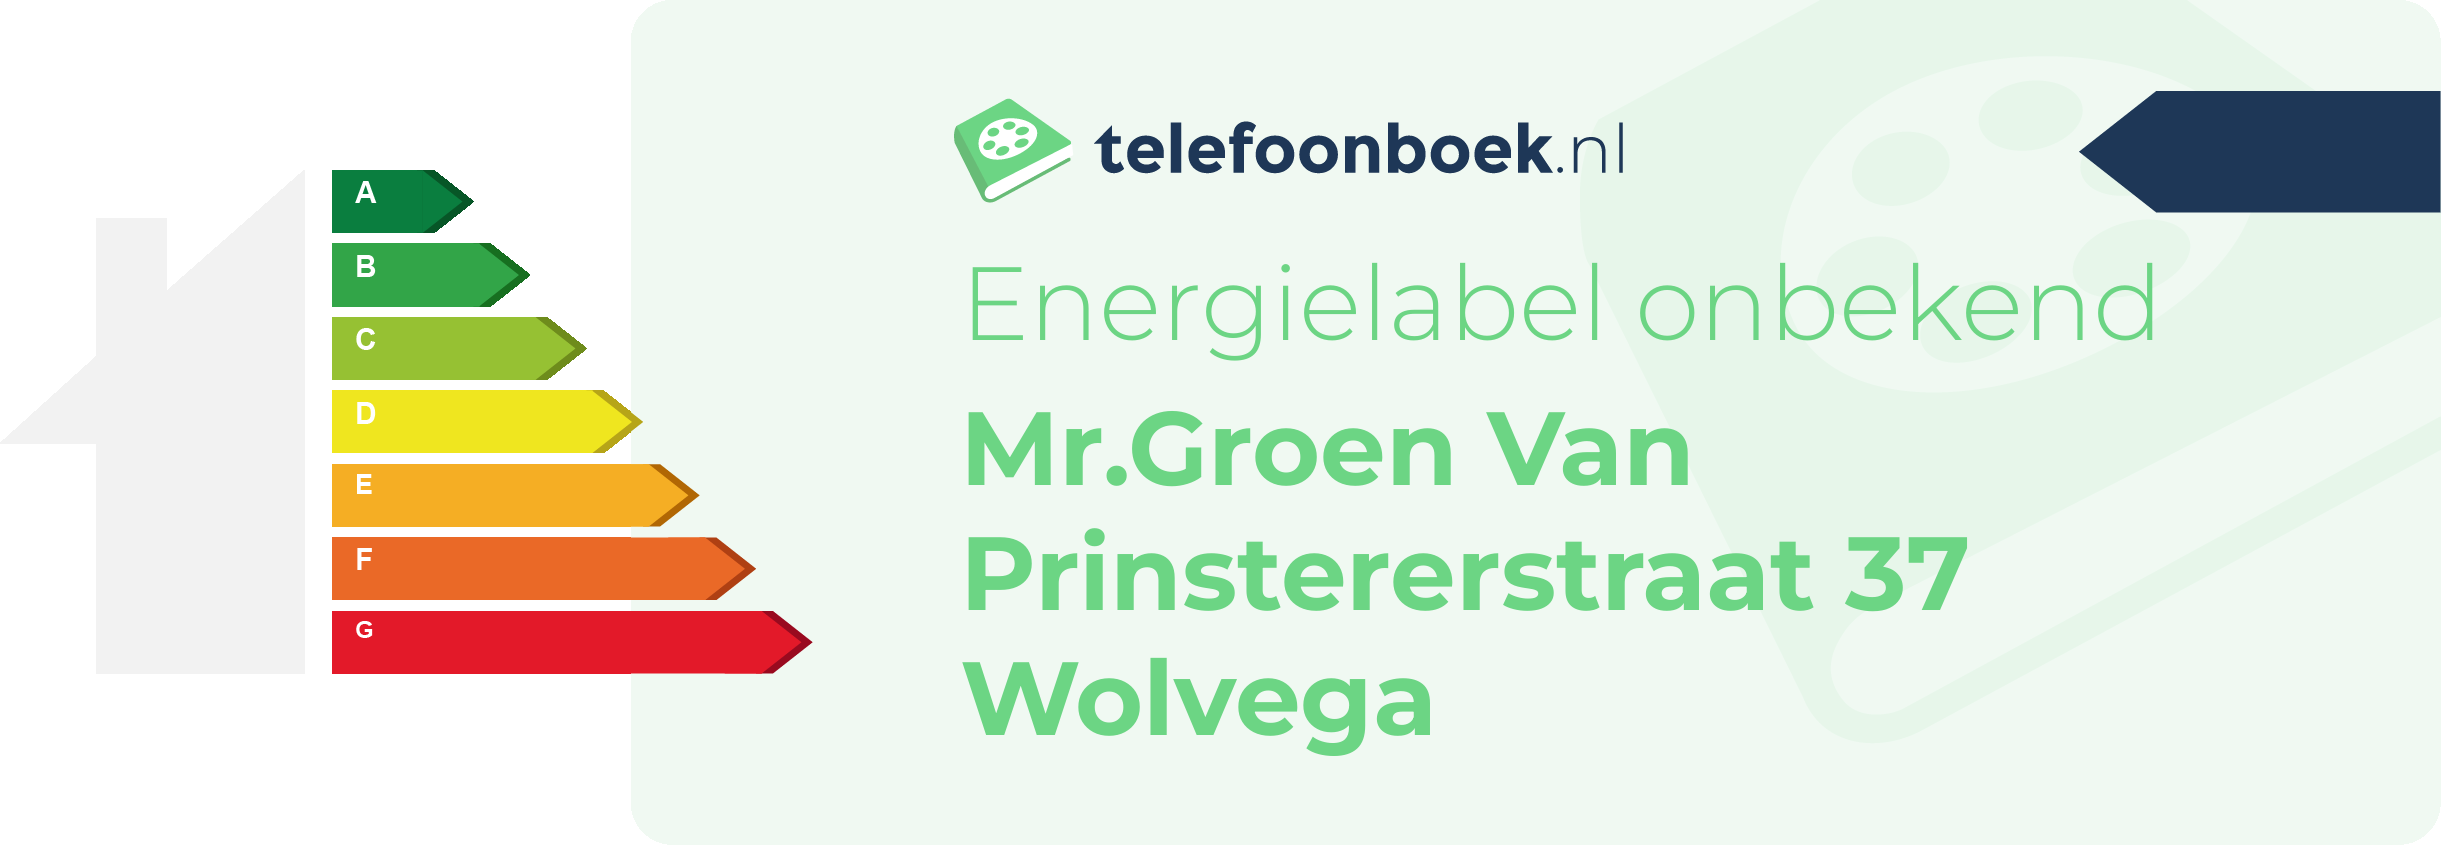 Energielabel Mr.Groen Van Prinstererstraat 37 Wolvega